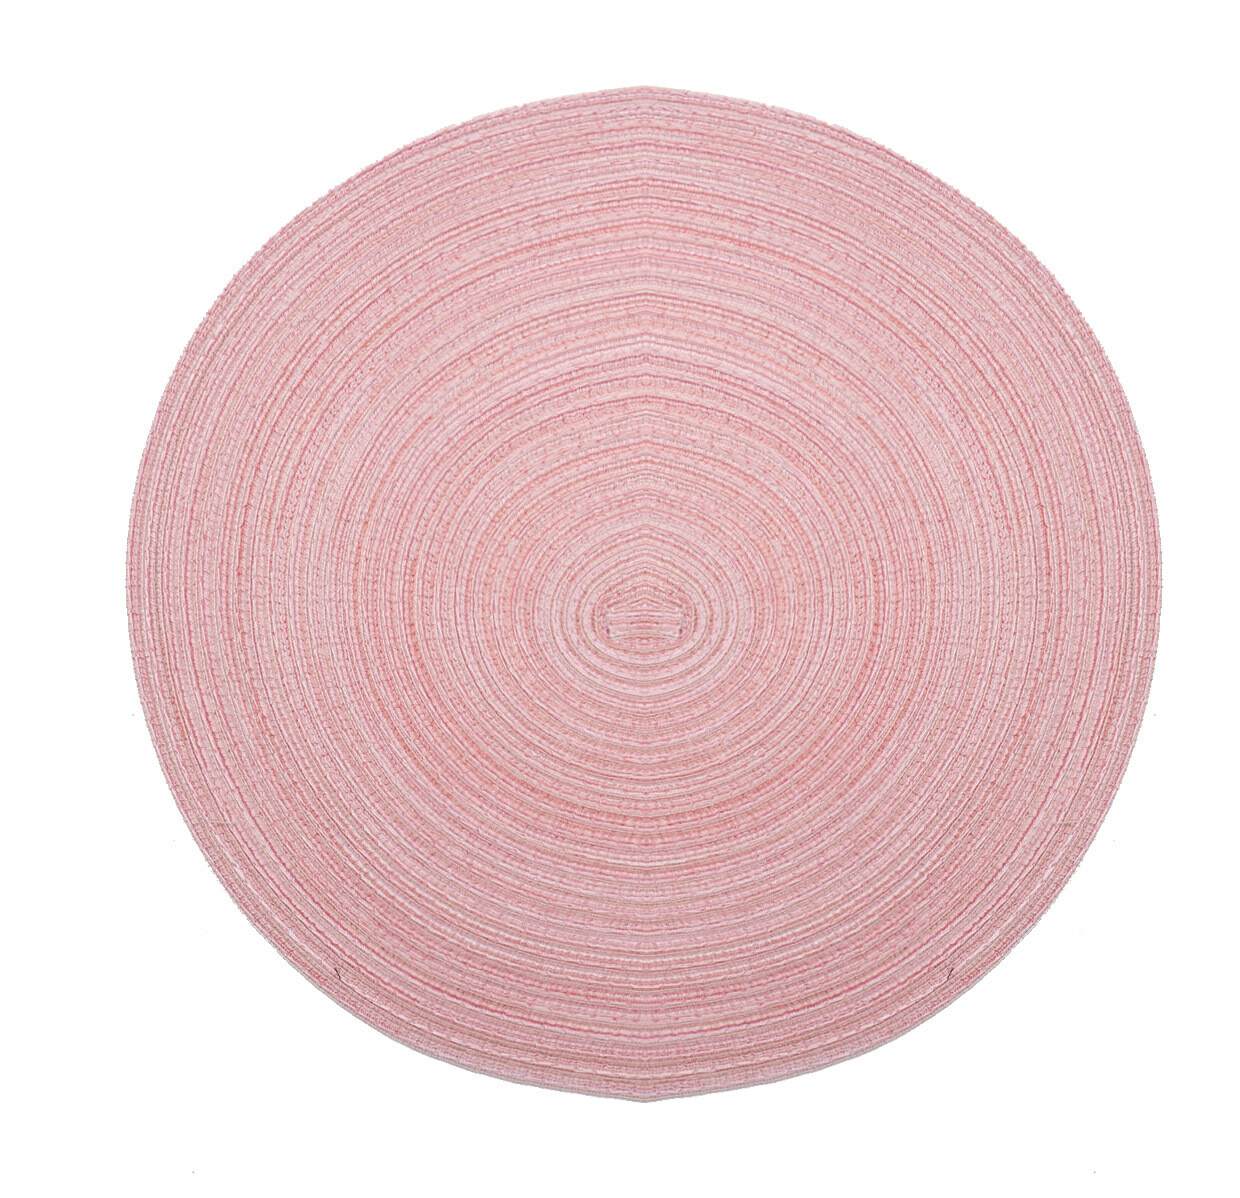 Ümmargune roosa lauamatt, pestav ja määrdumiskindel.
Apaļš galda paliktnis rozā krāsā, veidots no pinuma.